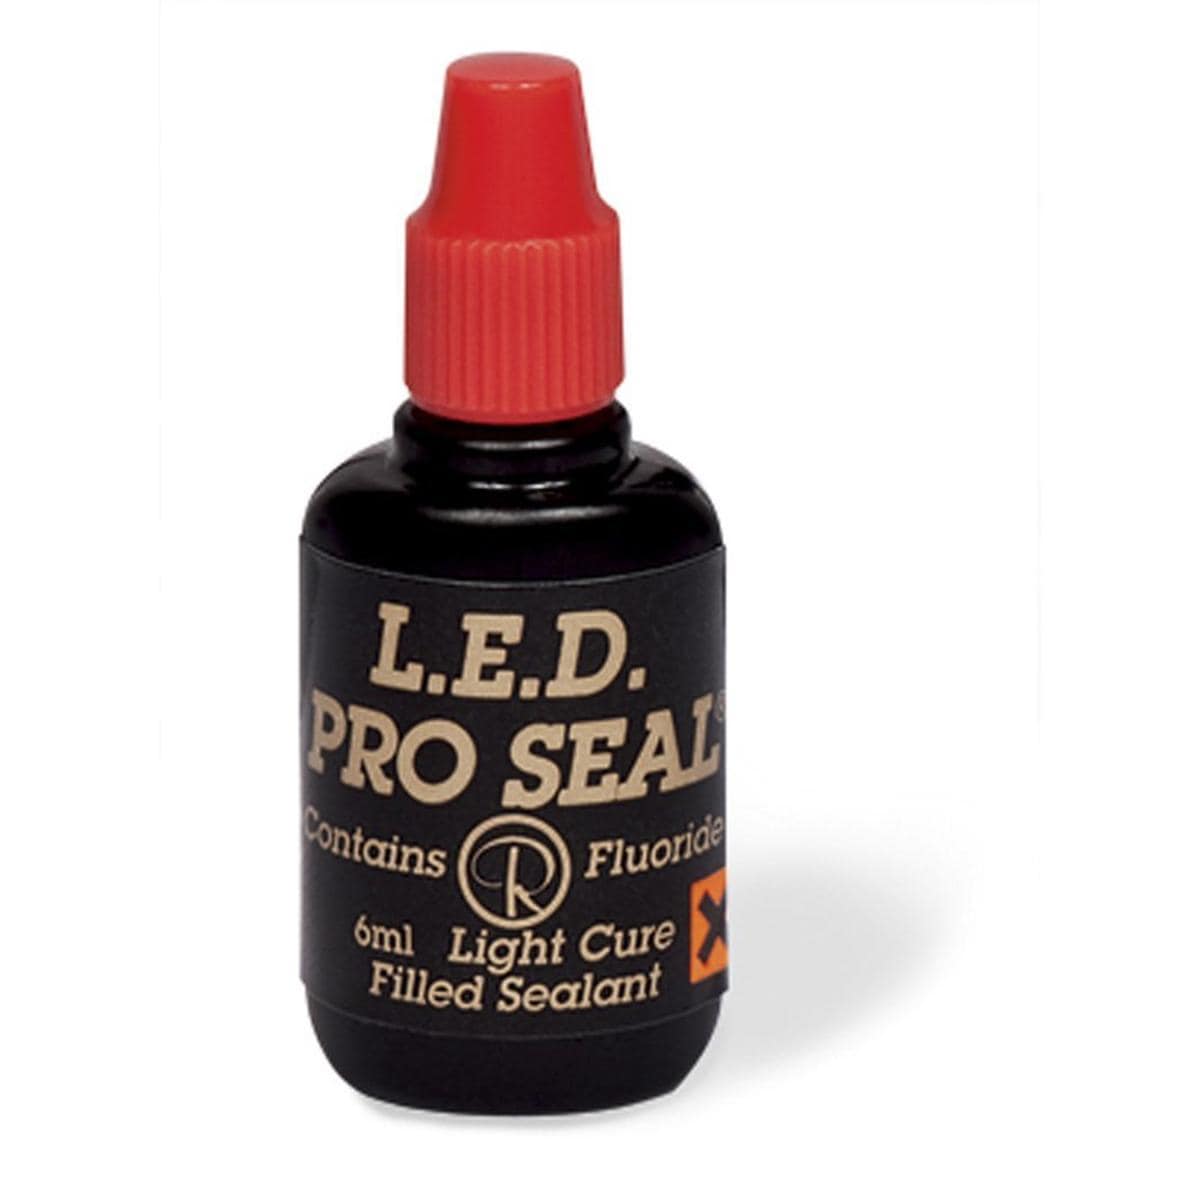 L.E.D. Pro Seal - REF. LEDPRO, flacon 6 ml